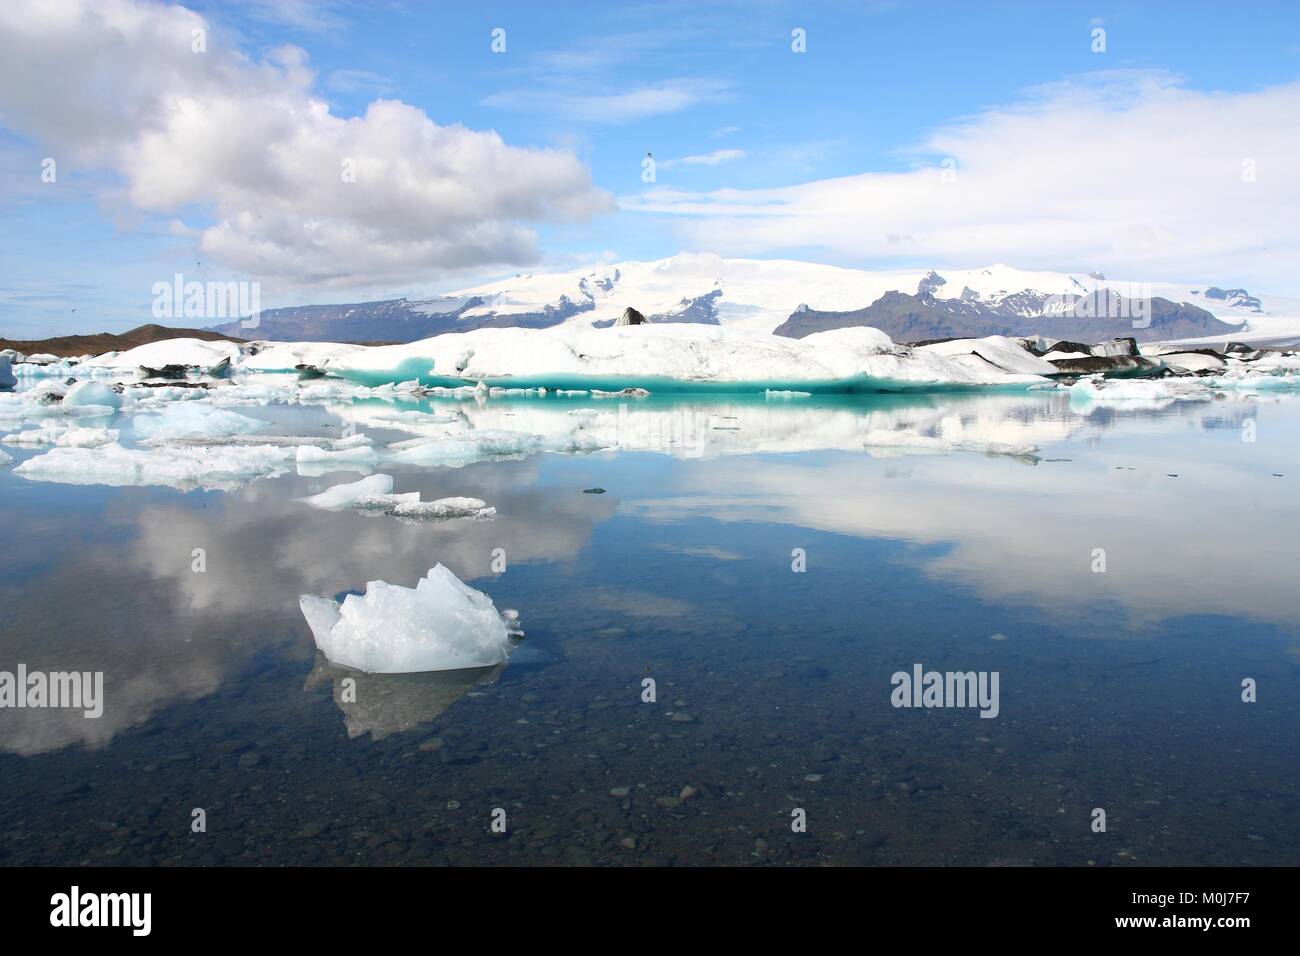 En iceberg Jokulsarlon lagoon en Islandia. El famoso lago. Destino turístico para los turistas junto al glaciar Vatnajokull. Foto de stock